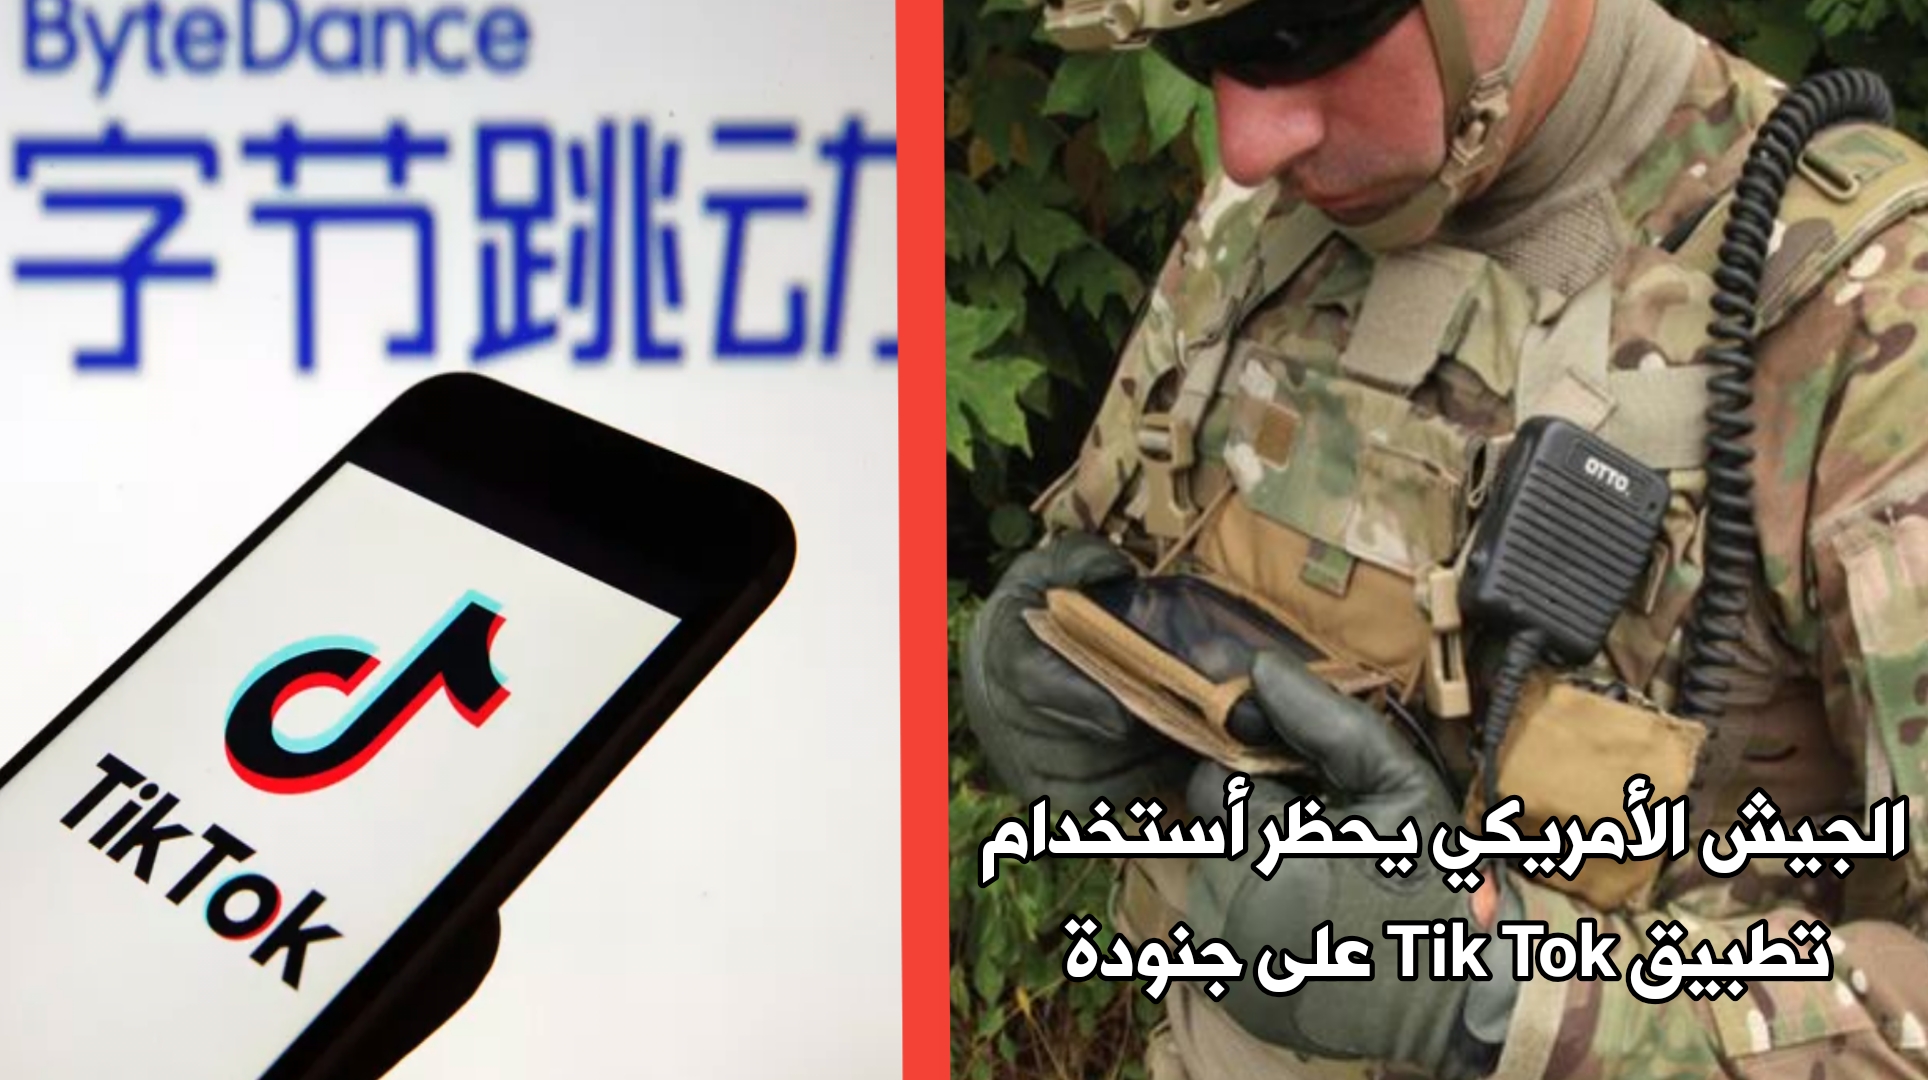 الجيش الأمريكي يحظر على جنودة أستخدام تطبيق Tik Tok الصيني ويعتبرة تهديداً